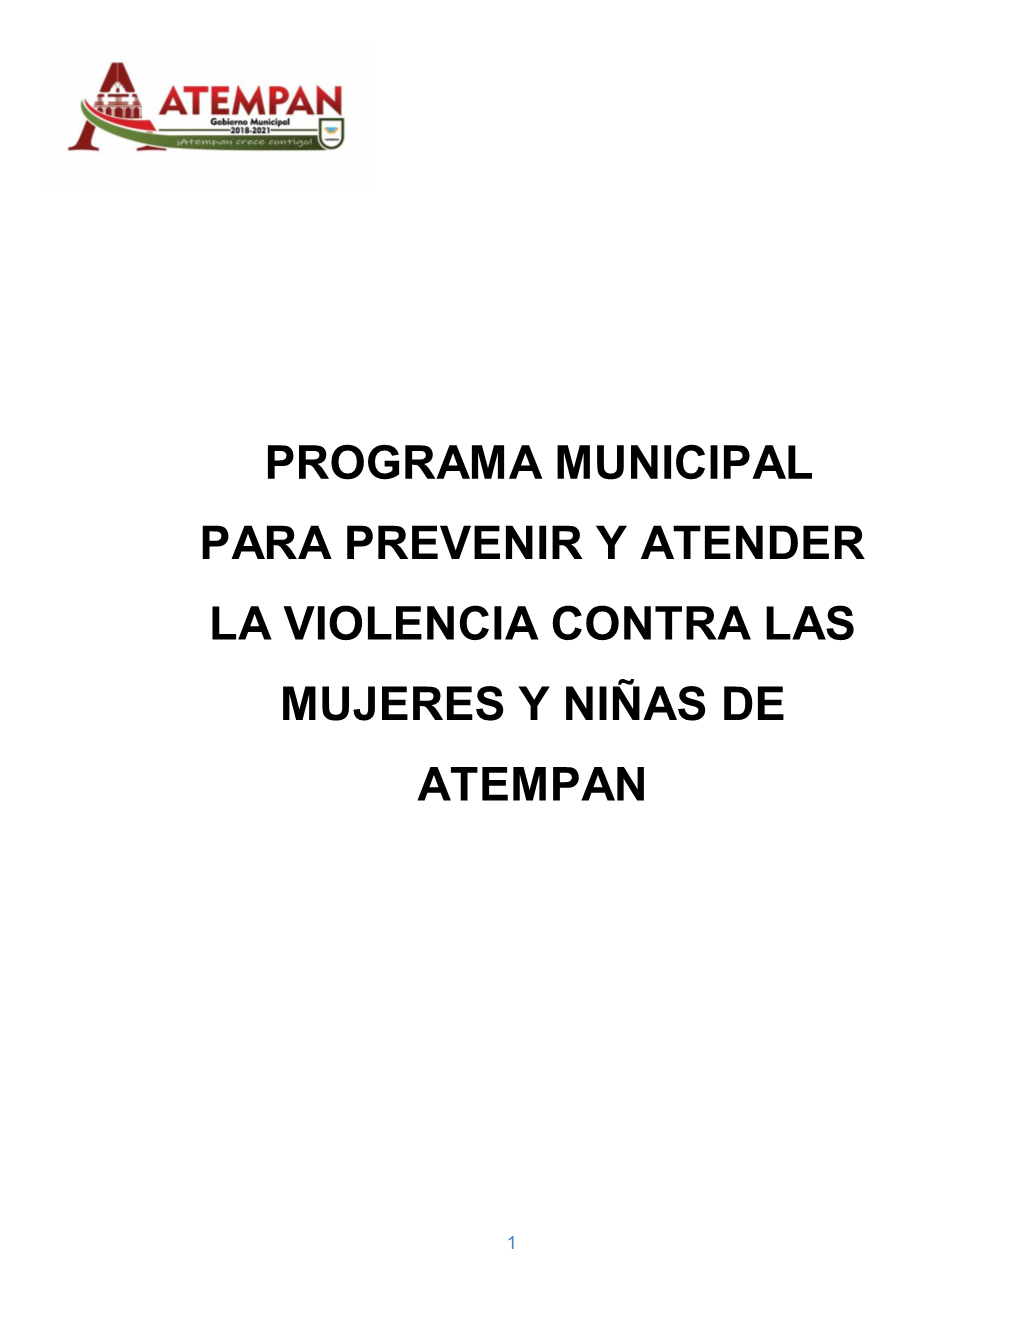 Programa Municipal Para Prevenir Y Atender La Violencia Contra Las Mujeres Y Niñas De Atempan